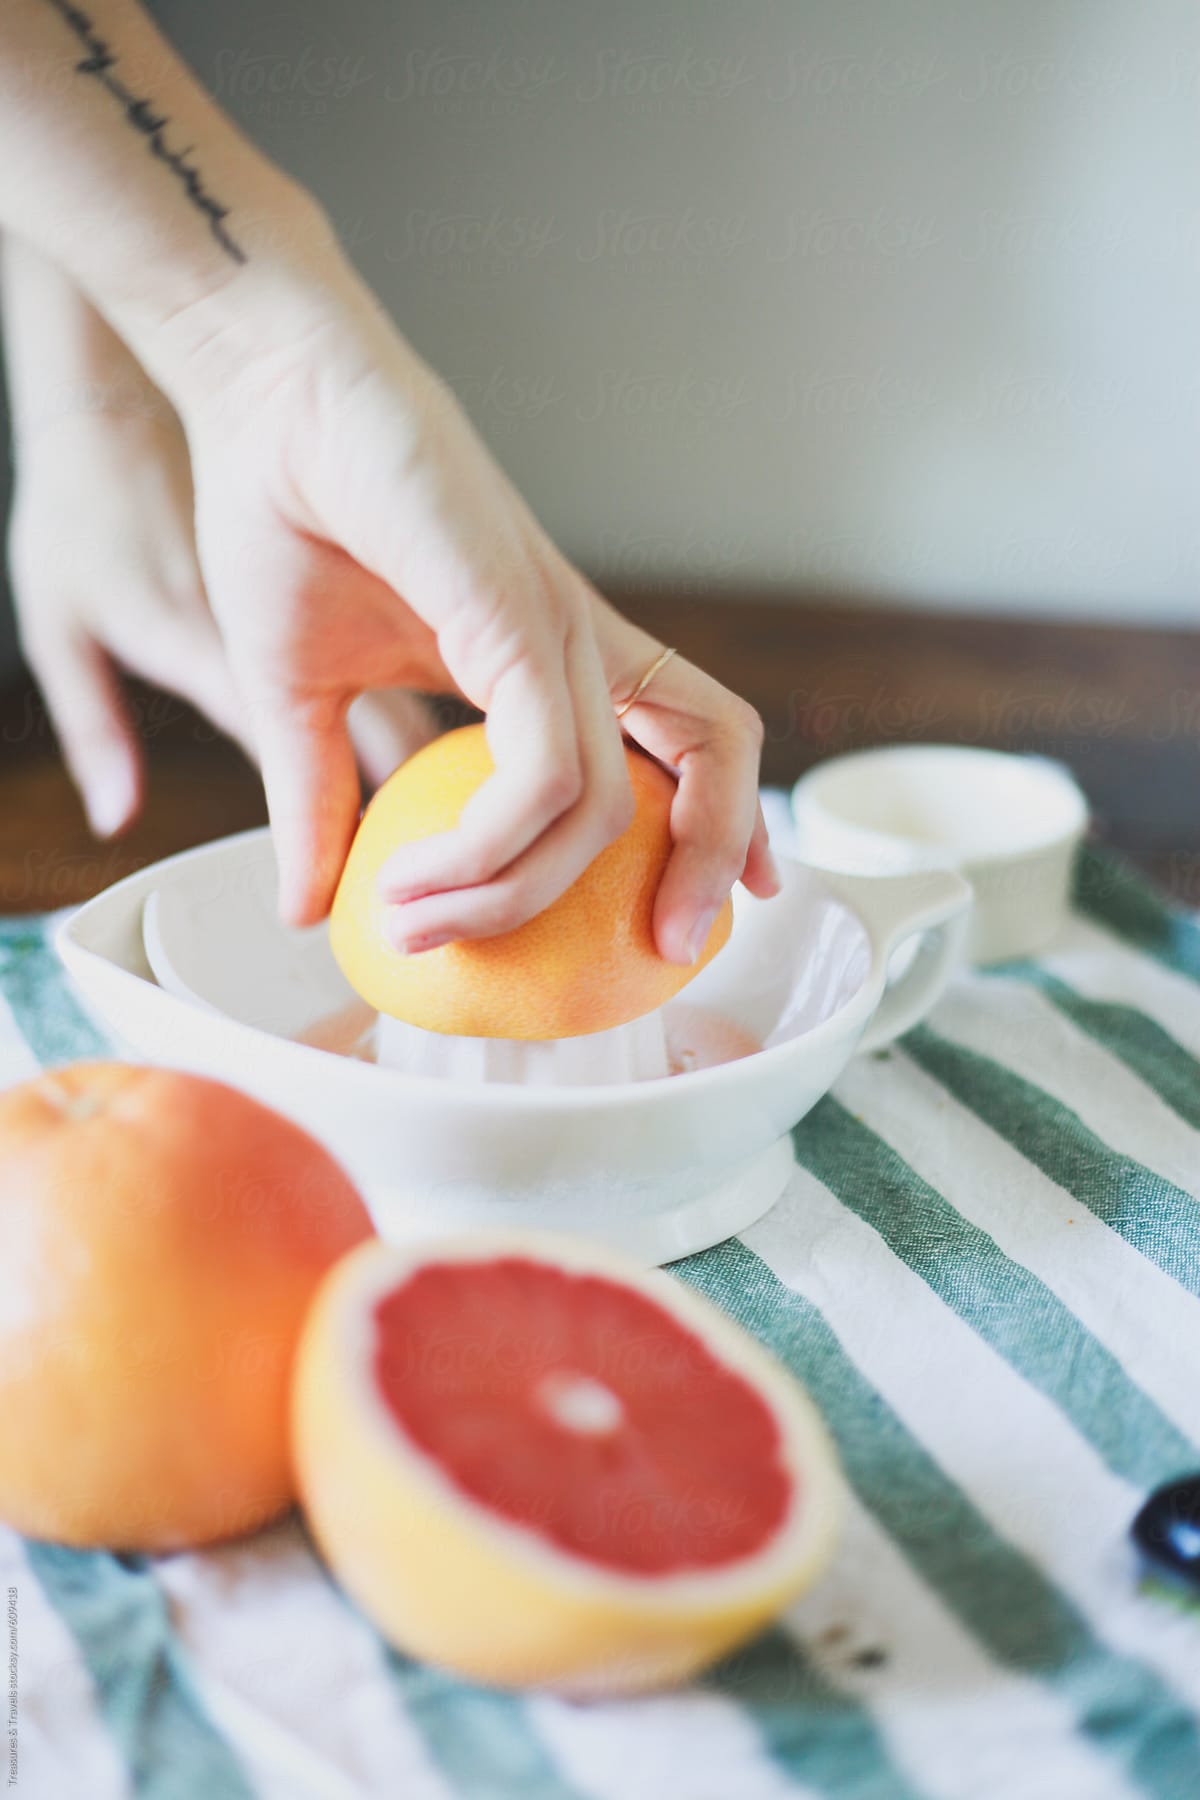 Hand juicing a grapefruit